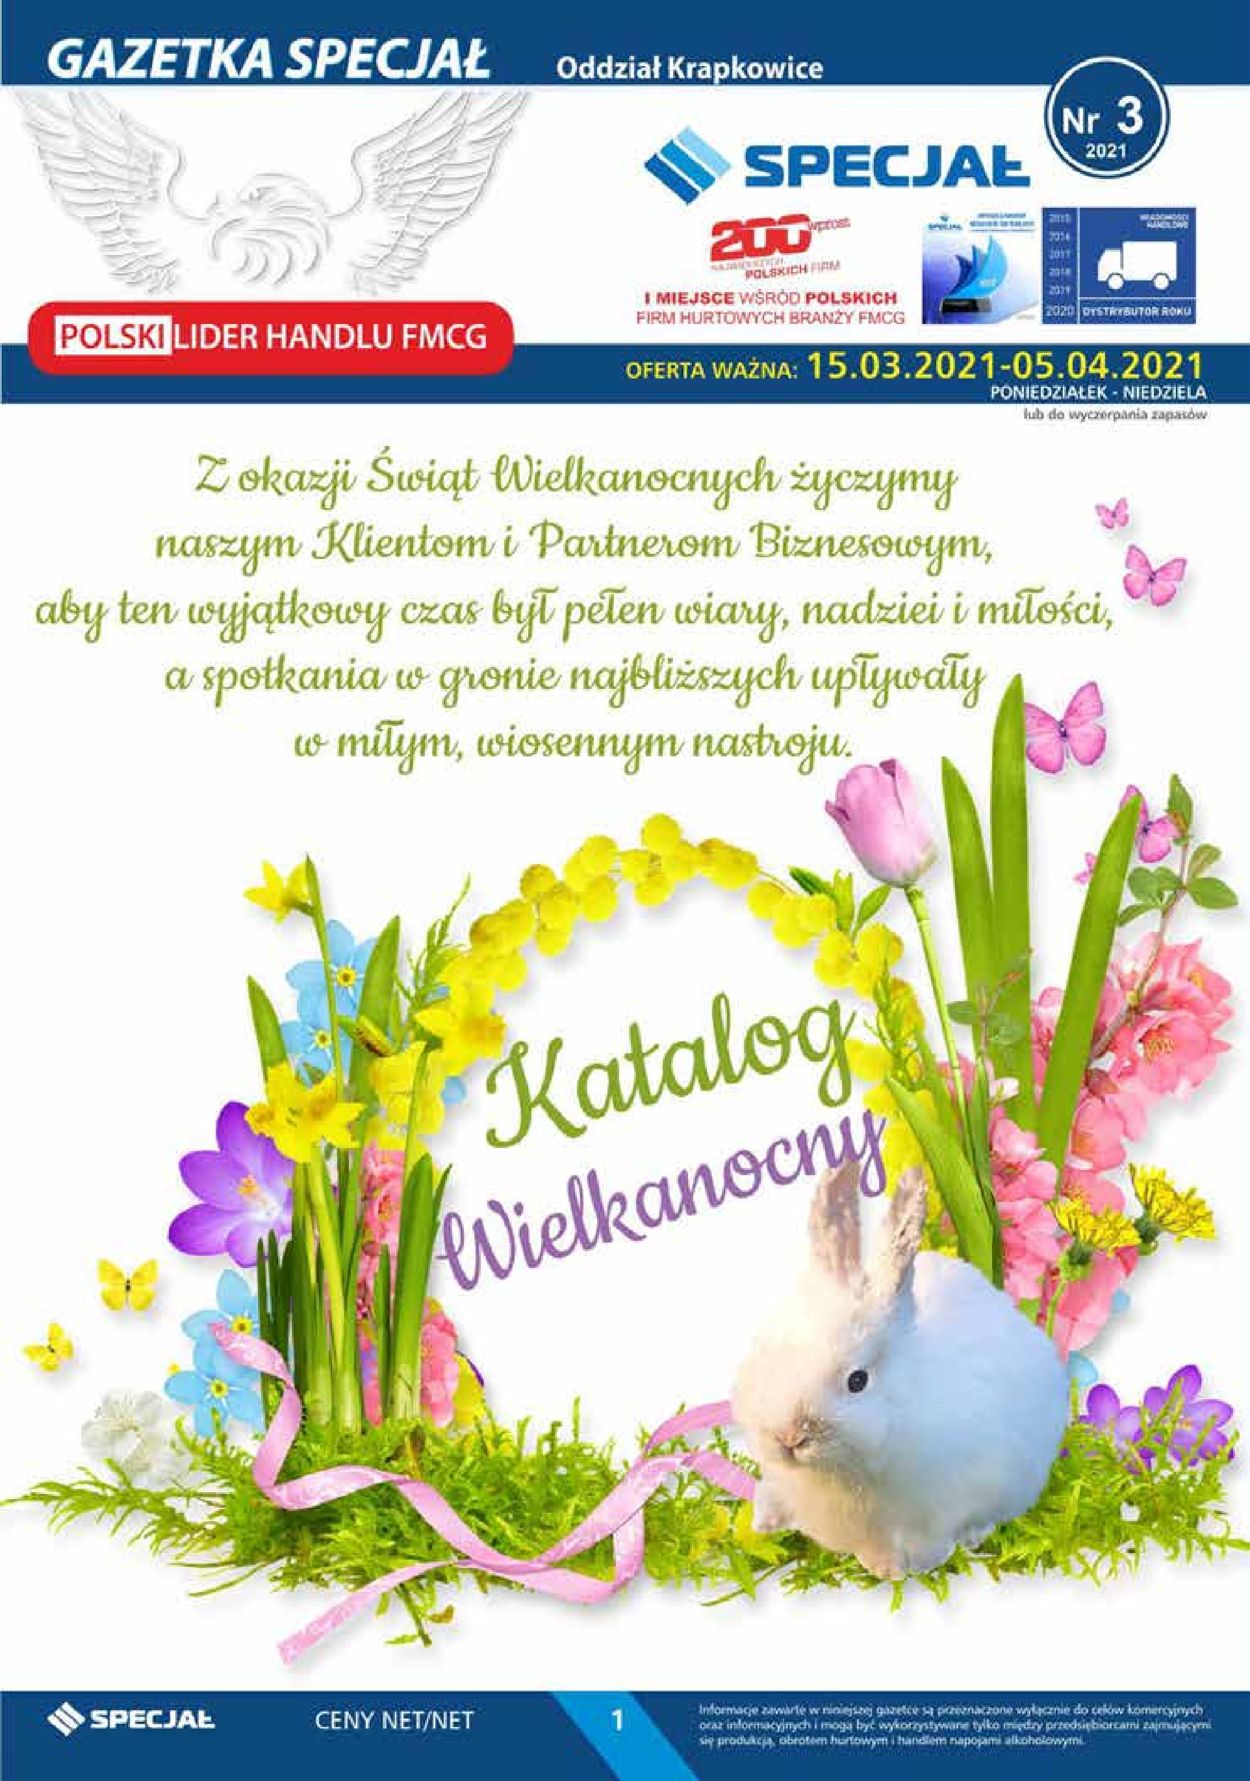 Gazetka promocyjna Specjał Katalog Wielkanocny 2021 - Oddział Krapkowice - 15.03-05.04.2021